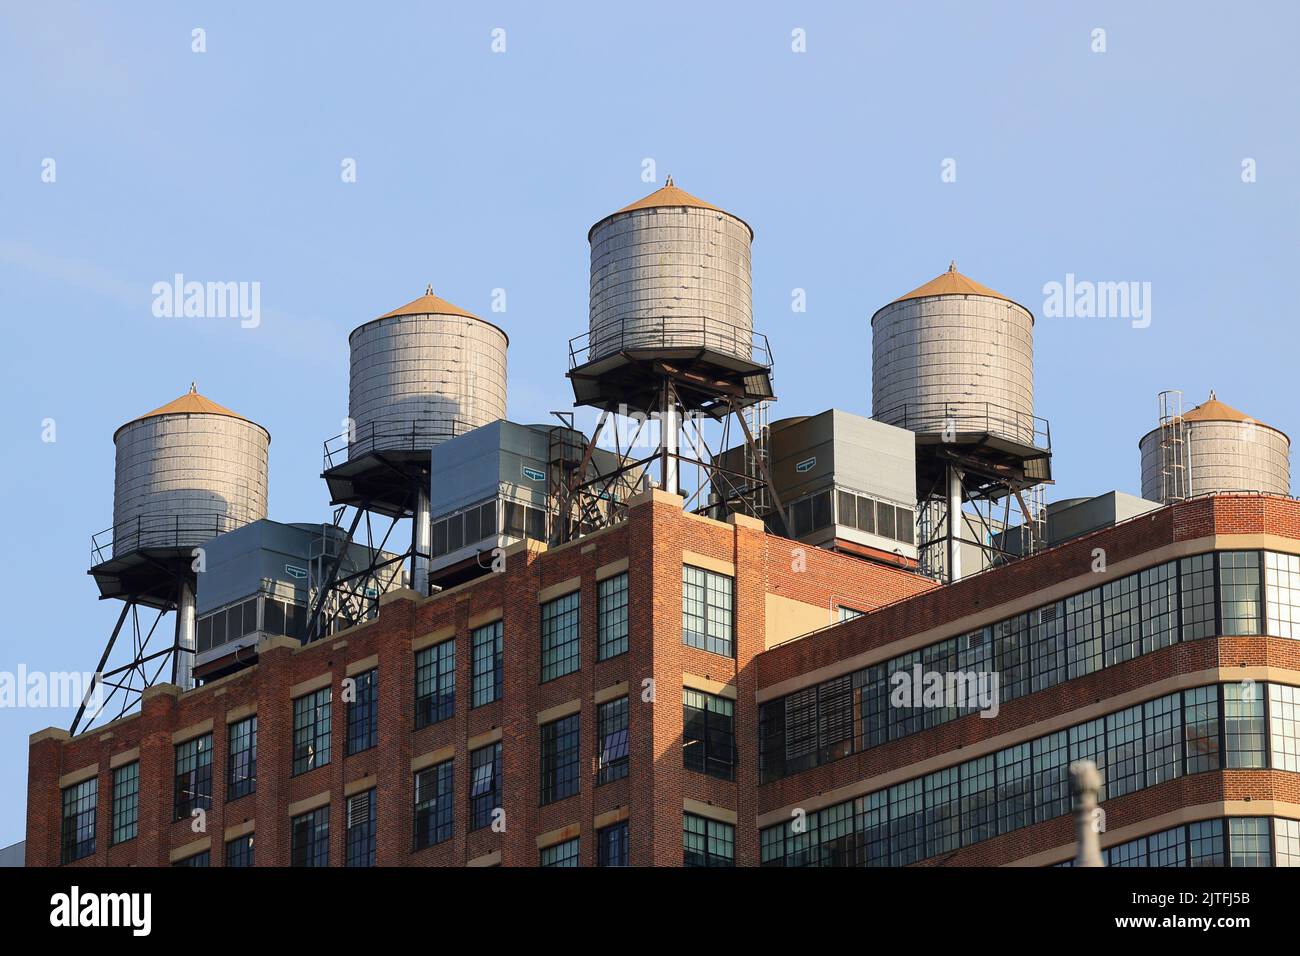 Les réservoirs d'eau en bois Rosenwach et les unités de refroidissement cvc sur le toit de l'entrepôt Starrett-Lehigh ont transformé un immeuble de bureaux à New York. Banque D'Images